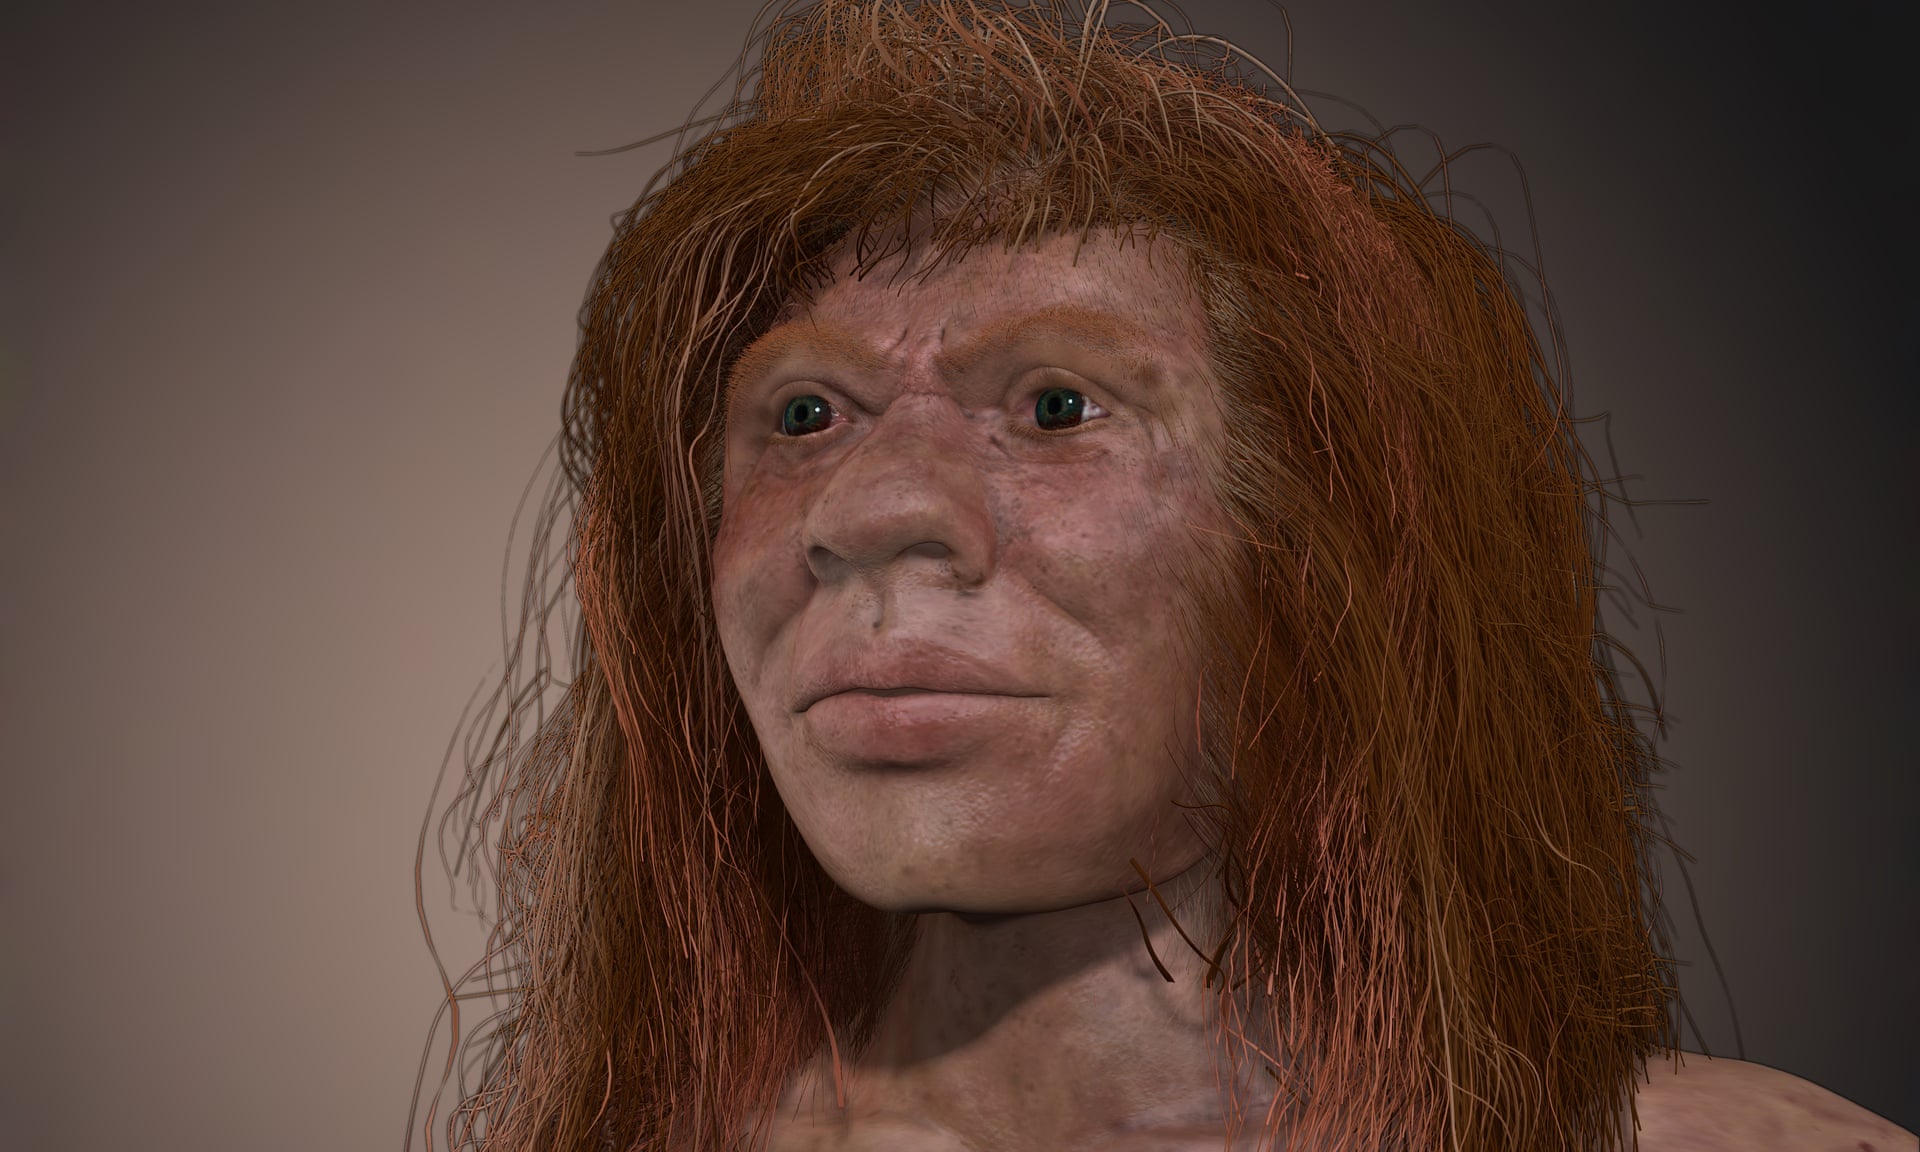 Денни, таинственный ребенок, живший 90,000 2 лет назад, чьими родителями были два разных вида людей XNUMX.